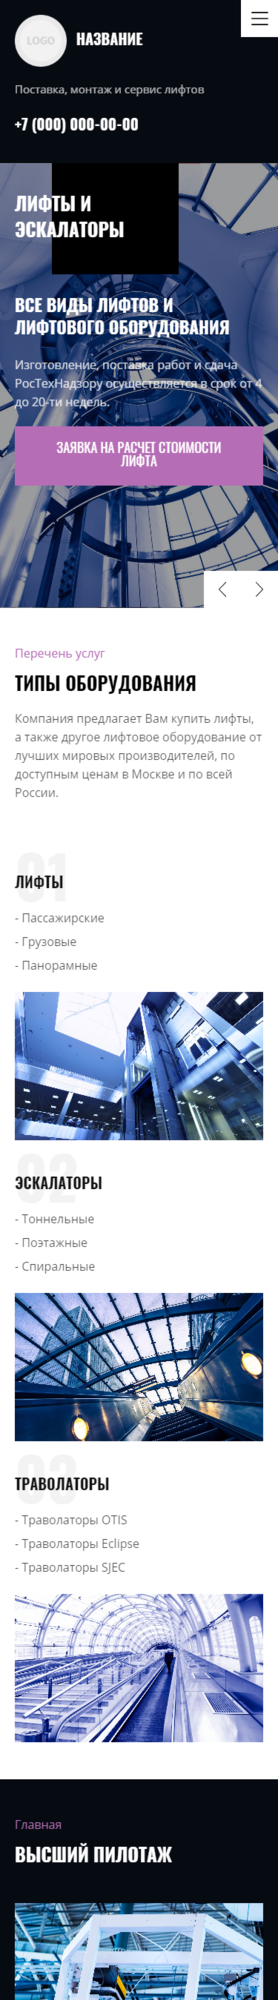 Готовый Сайт-Бизнес № 2726874 - Продажа и обслуживание лифтов и эскалаторов (Мобильная версия)